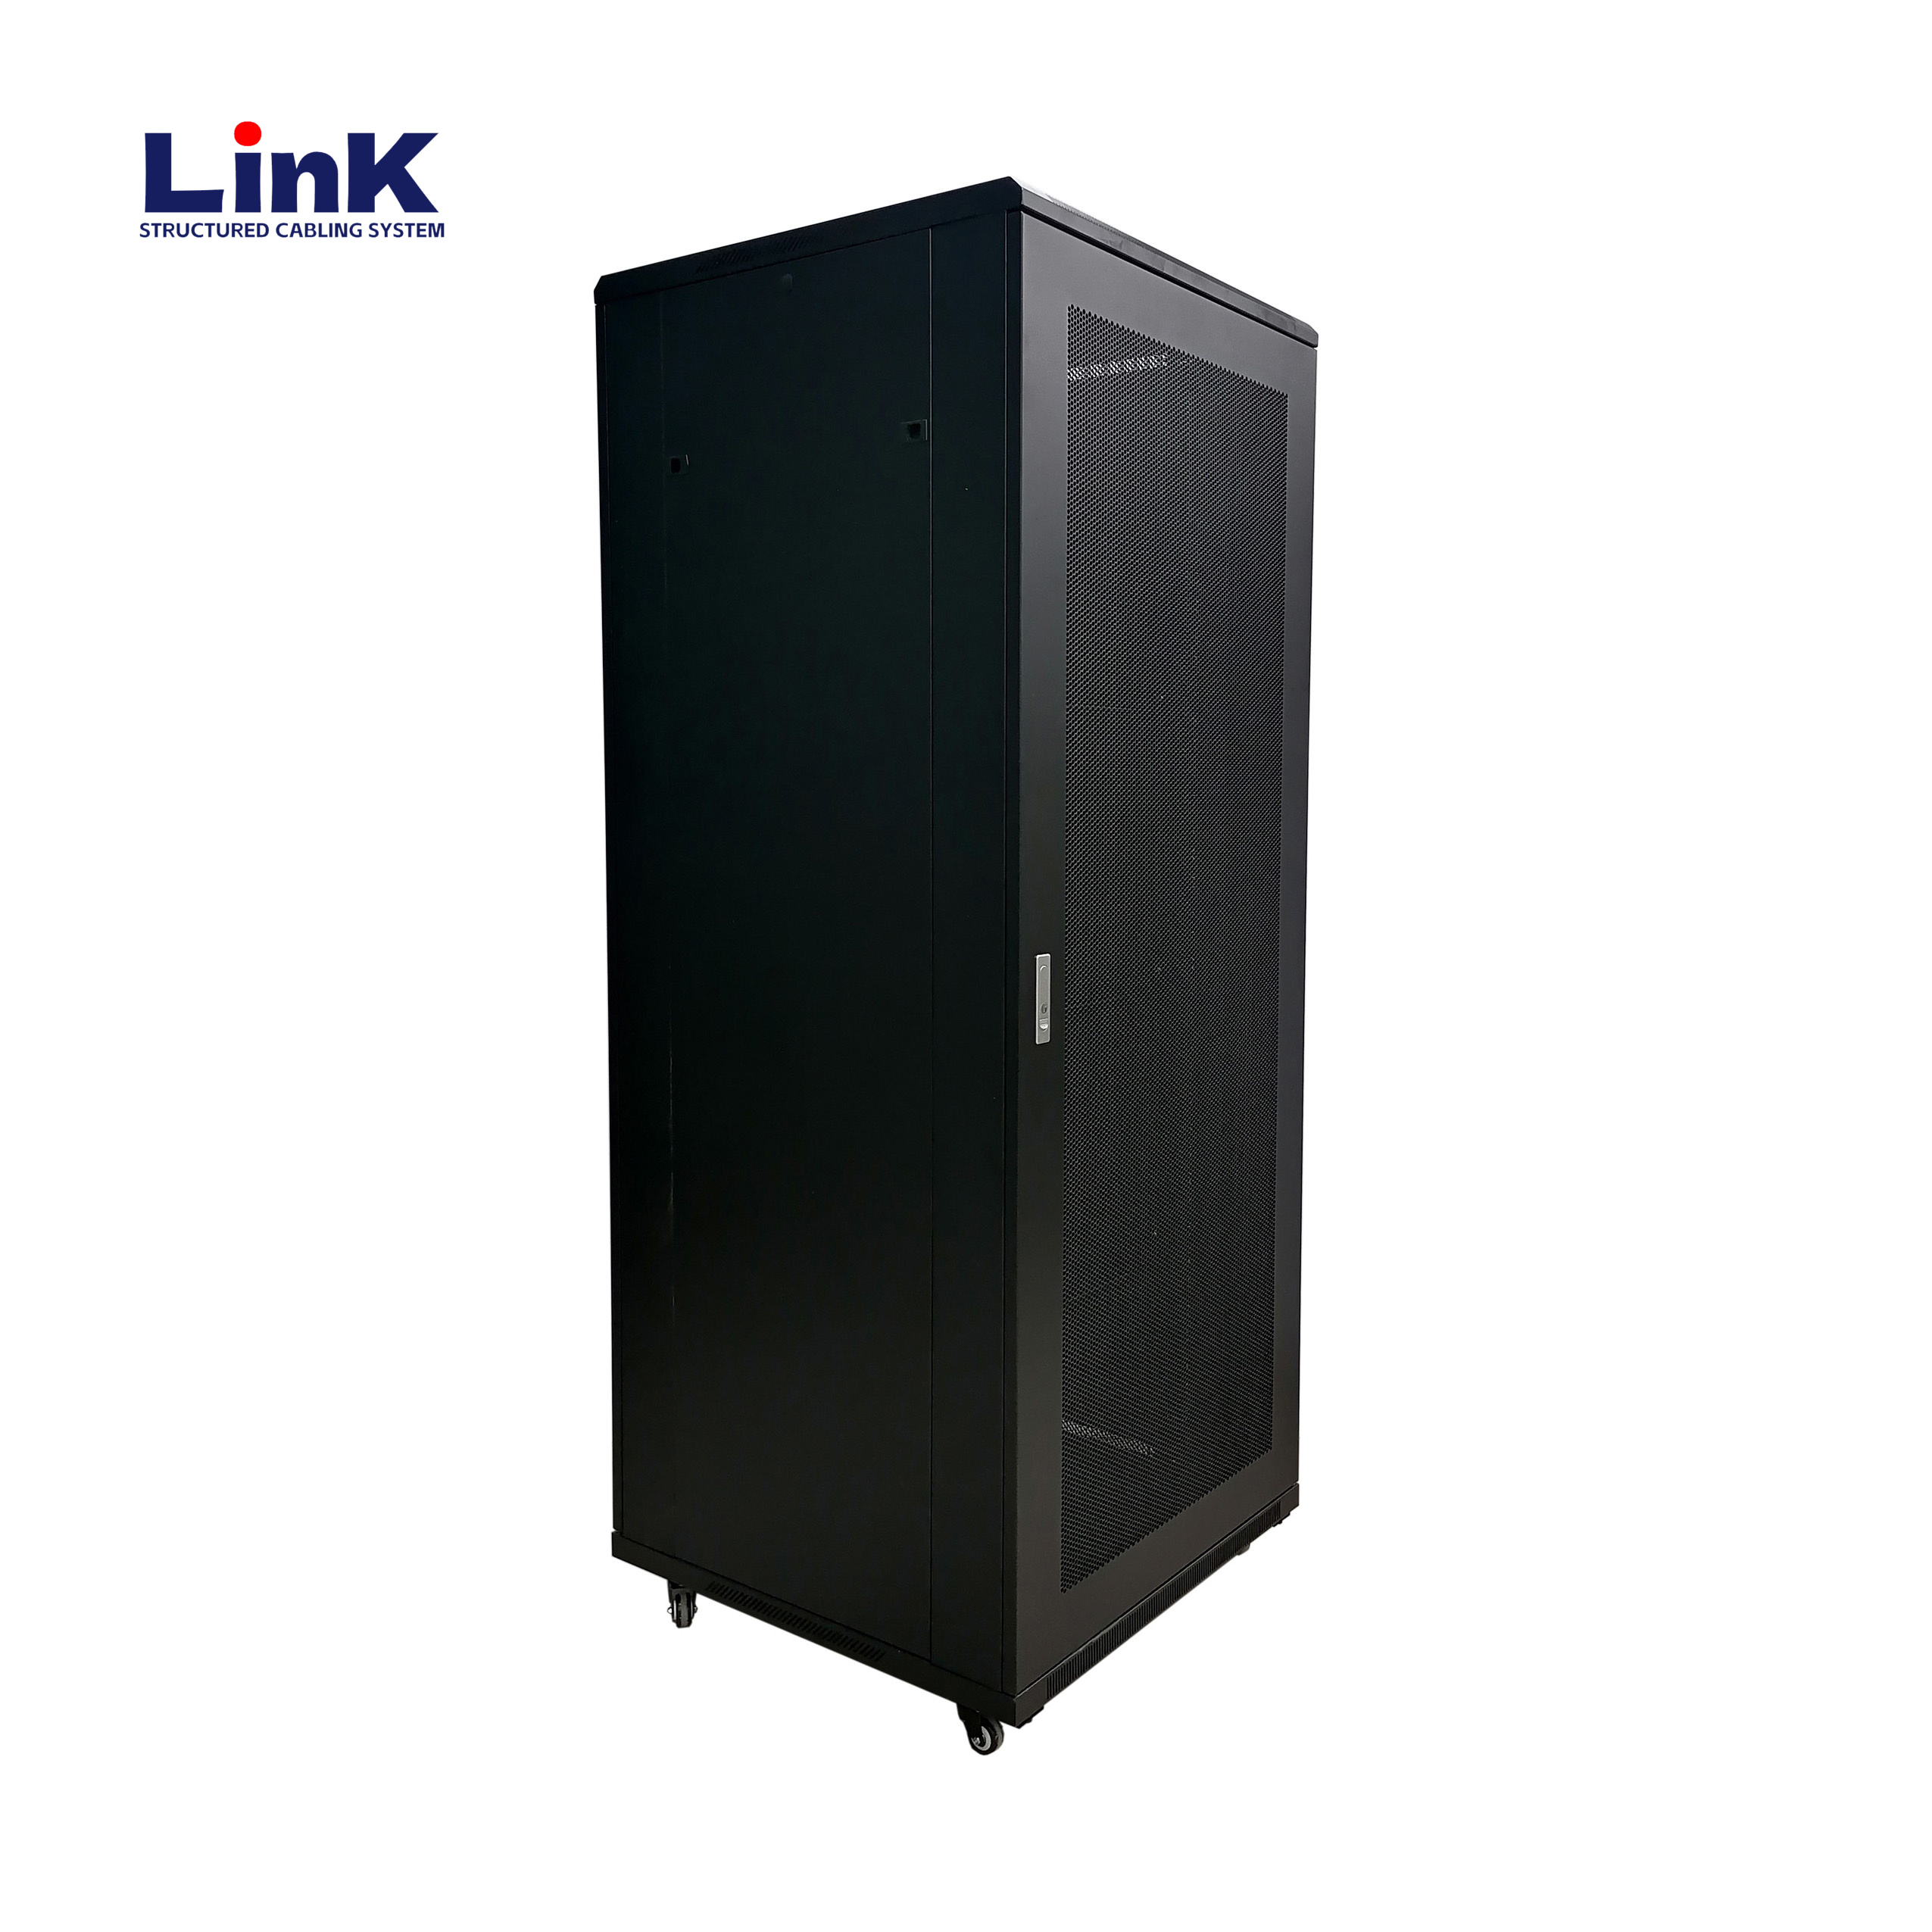 19" 42u Equipment Rack (600mm X 800mm) Floor Standing Server Cabinet with casters